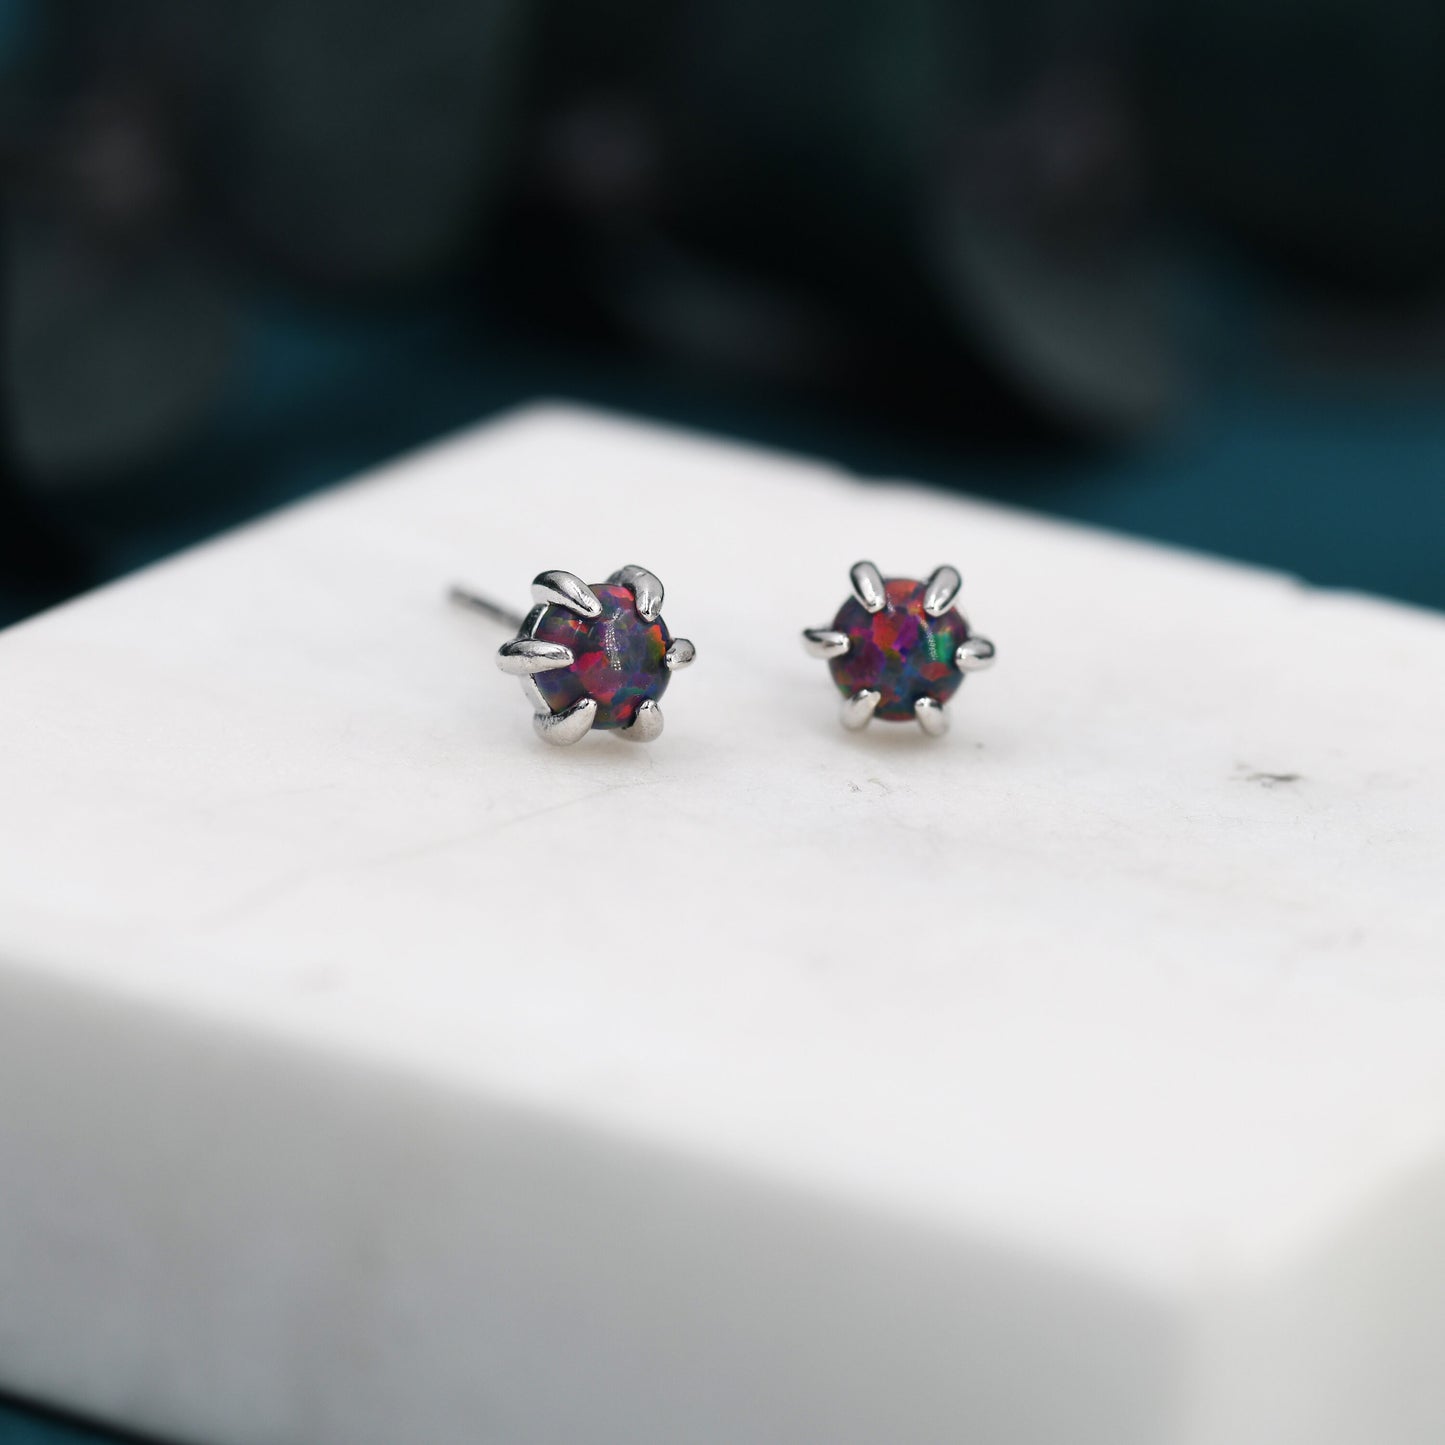 Cosmic Purple Opal Long Prong Stud Earrings in Sterling Silver, Silver or Gold, Opal Earrings, Tiny Opal Earrings, Dainty Opal Earrings